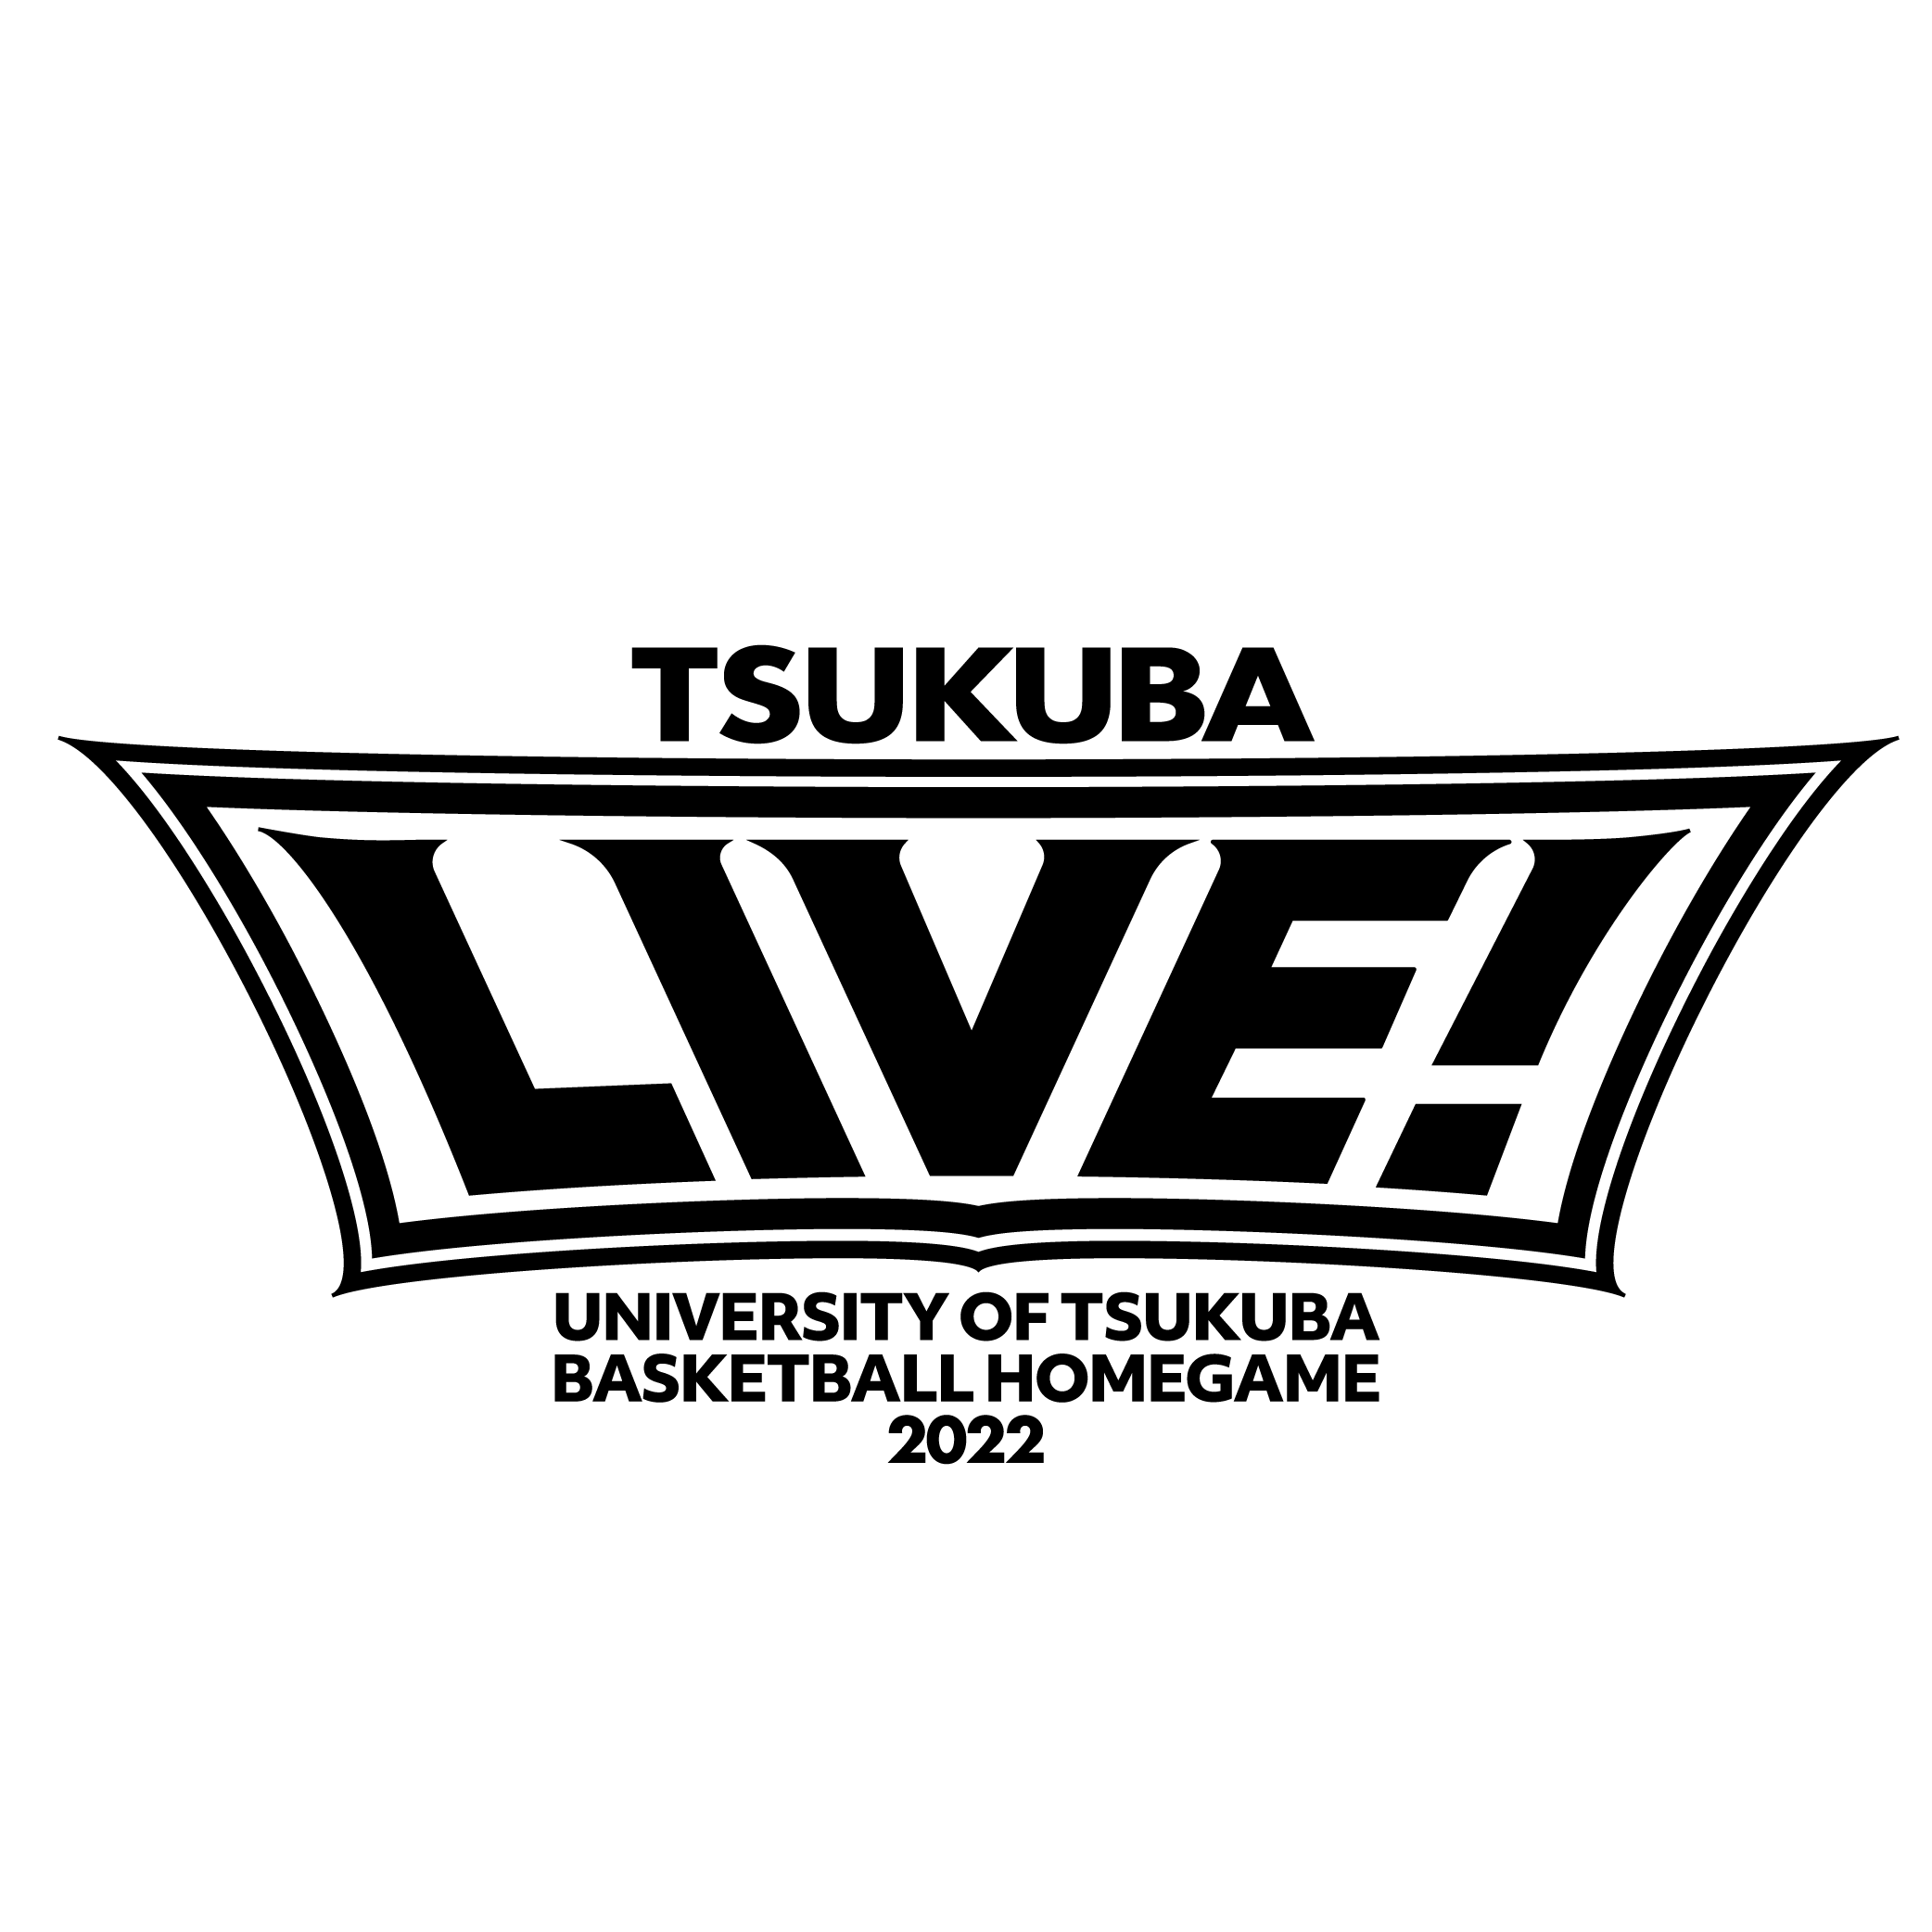 TSUKUBA LIVE!